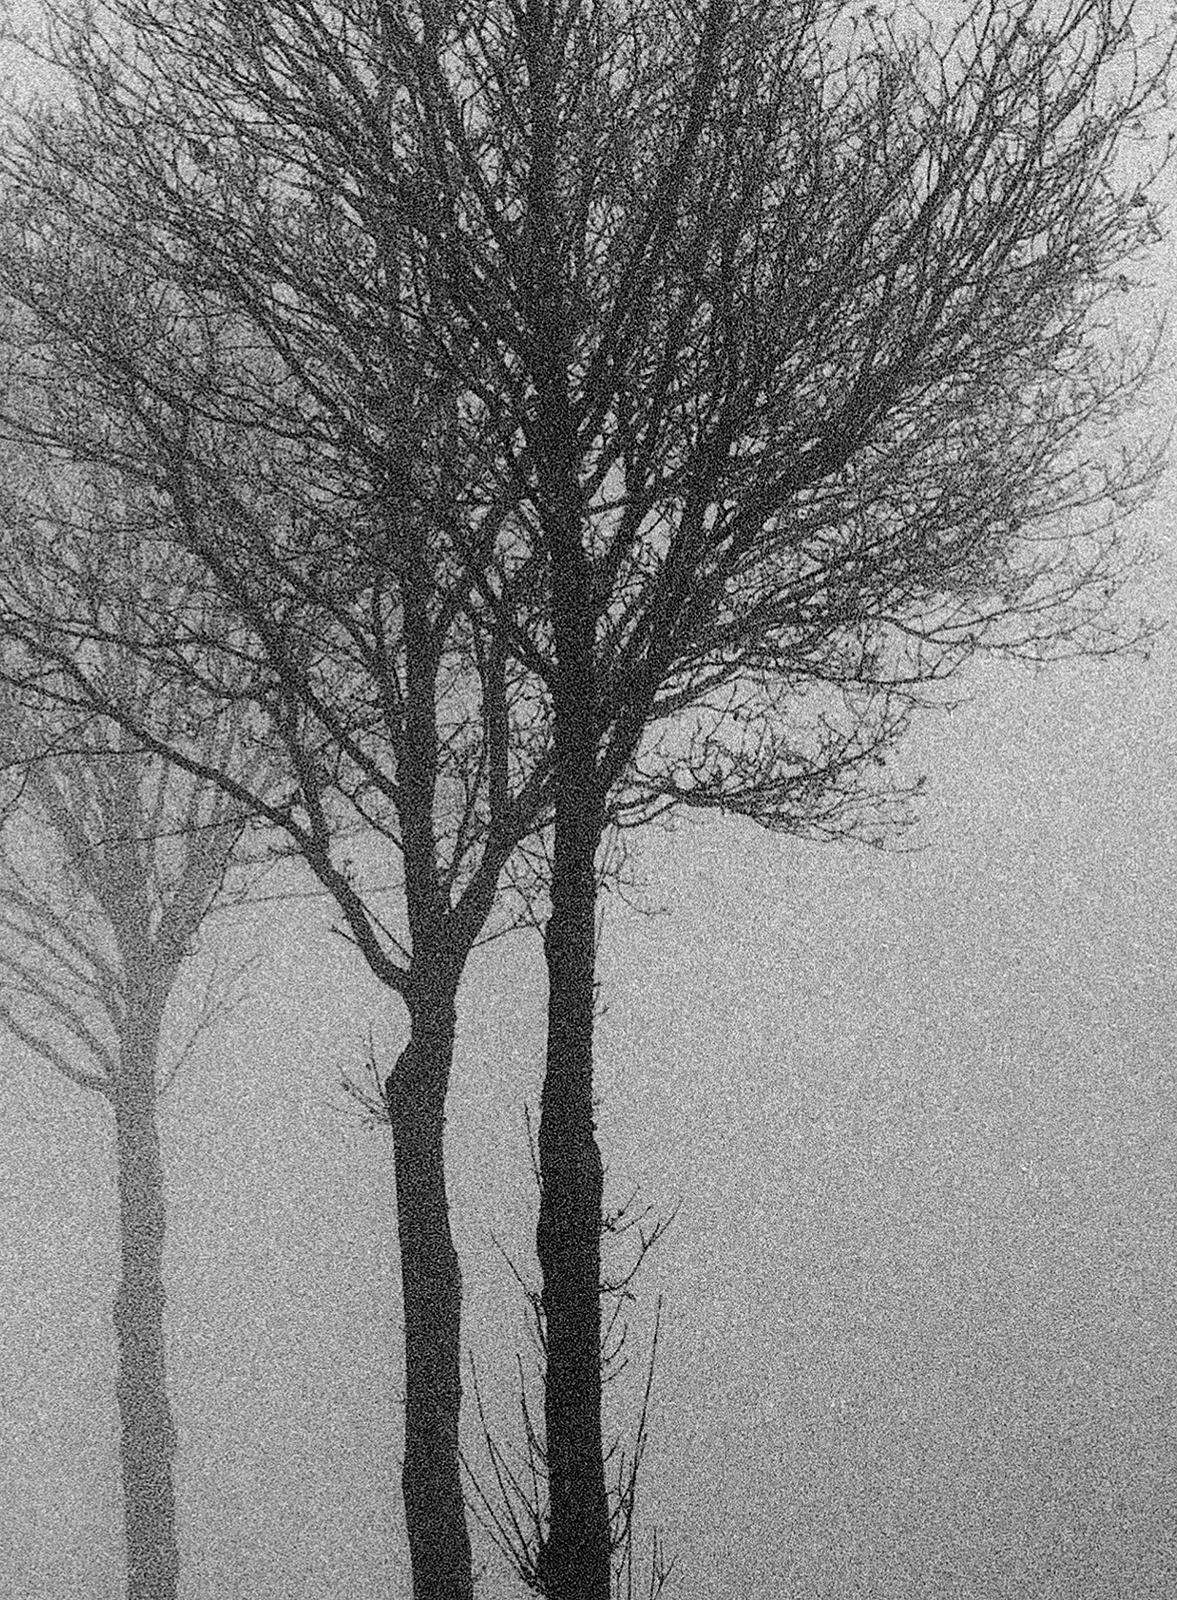  3 Bäume  - Signierter Archivpigmentdruck in limitierter Auflage, Frankreich, 1996   -  Auflage von 5
Dieses Bild wurde auf Film festgehalten. Das Negativ wurde gescannt und eine digitale Datei erstellt, die dann auf Hahnemühle Photo Rag Baryta